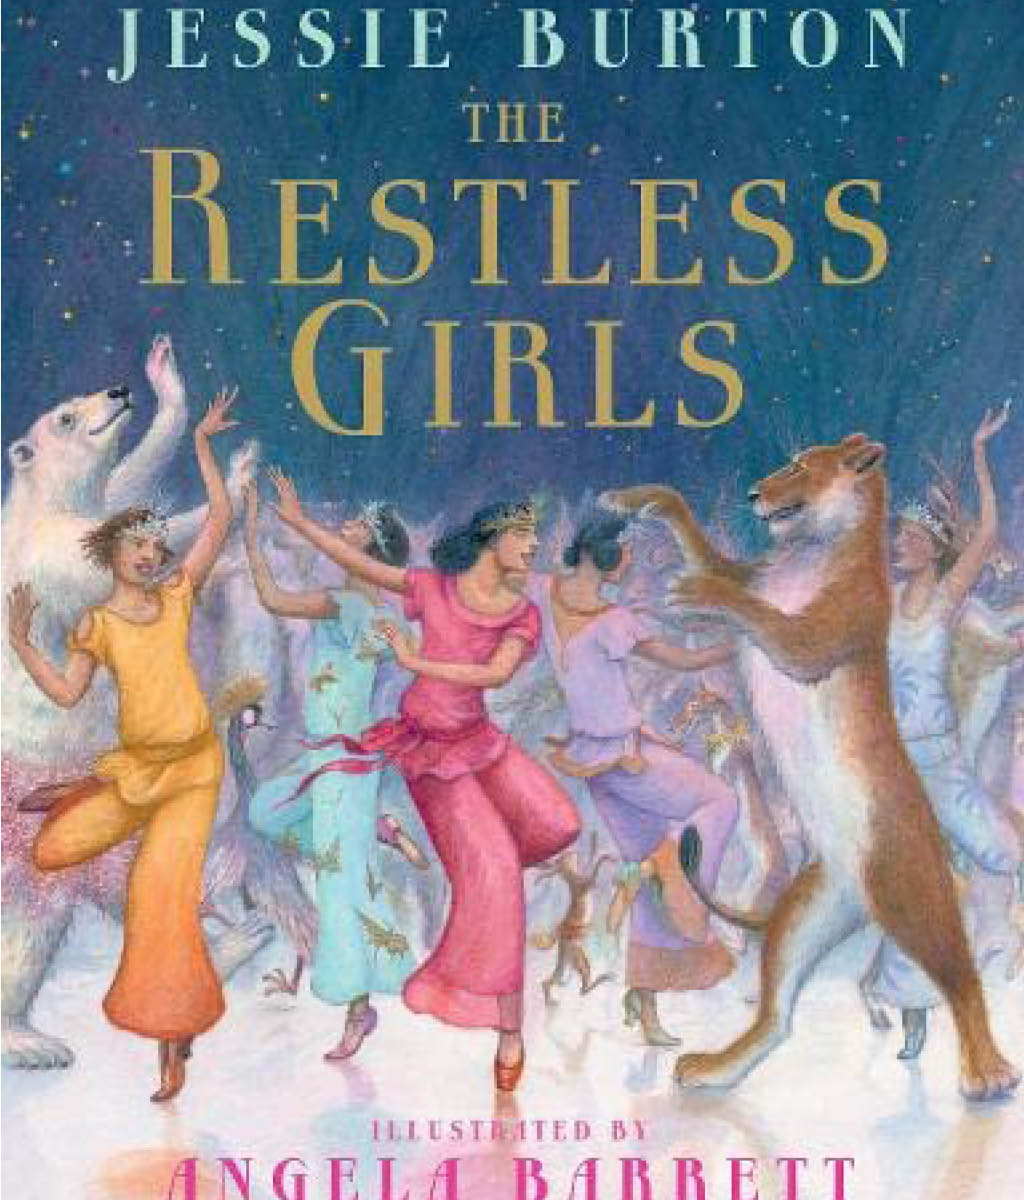 The Restless Girls by Jessie Burton